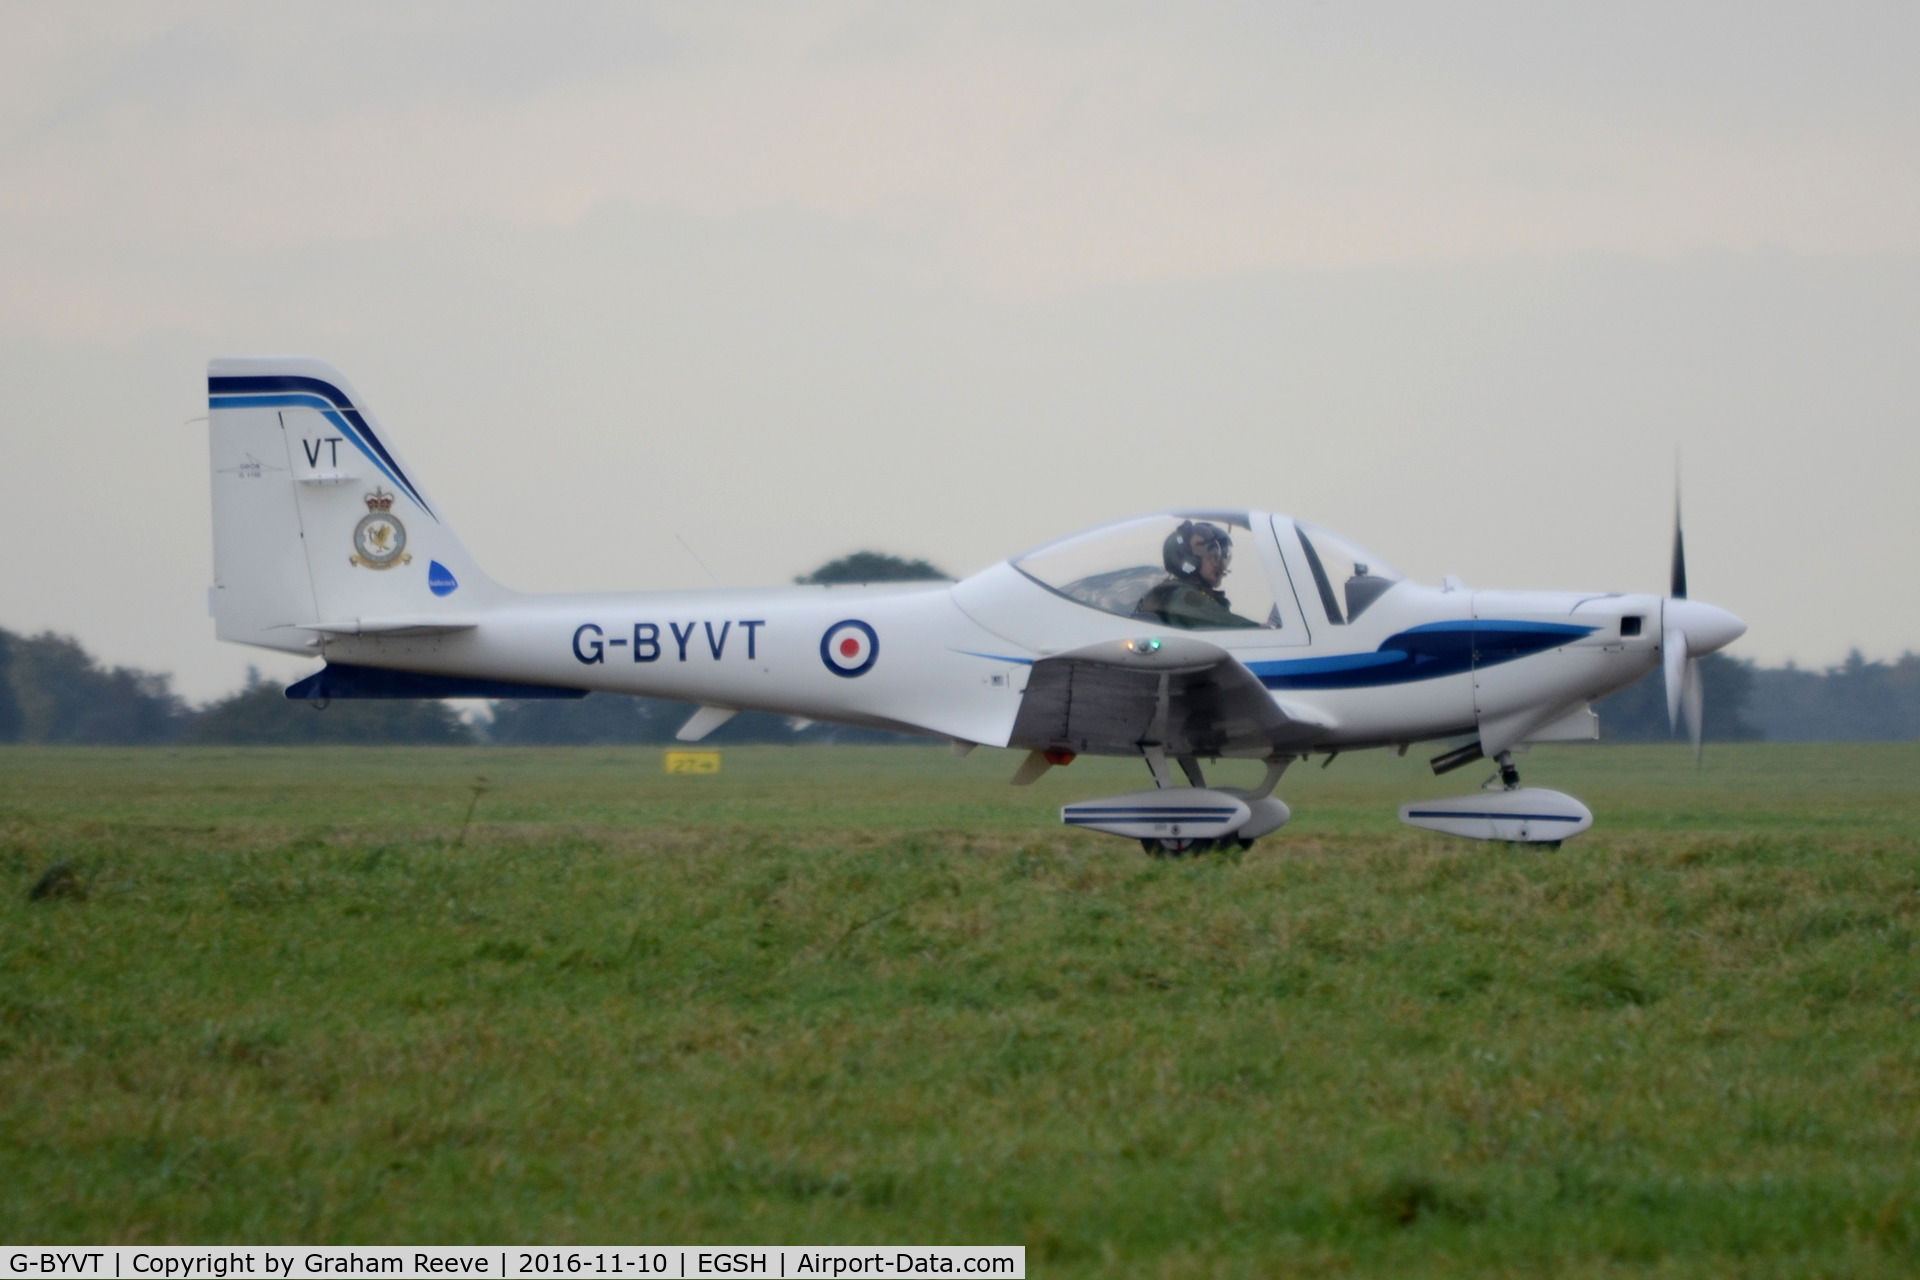 G-BYVT, 2000 Grob G-115E Tutor T1 C/N 82129/E, Just landed at Norwich.